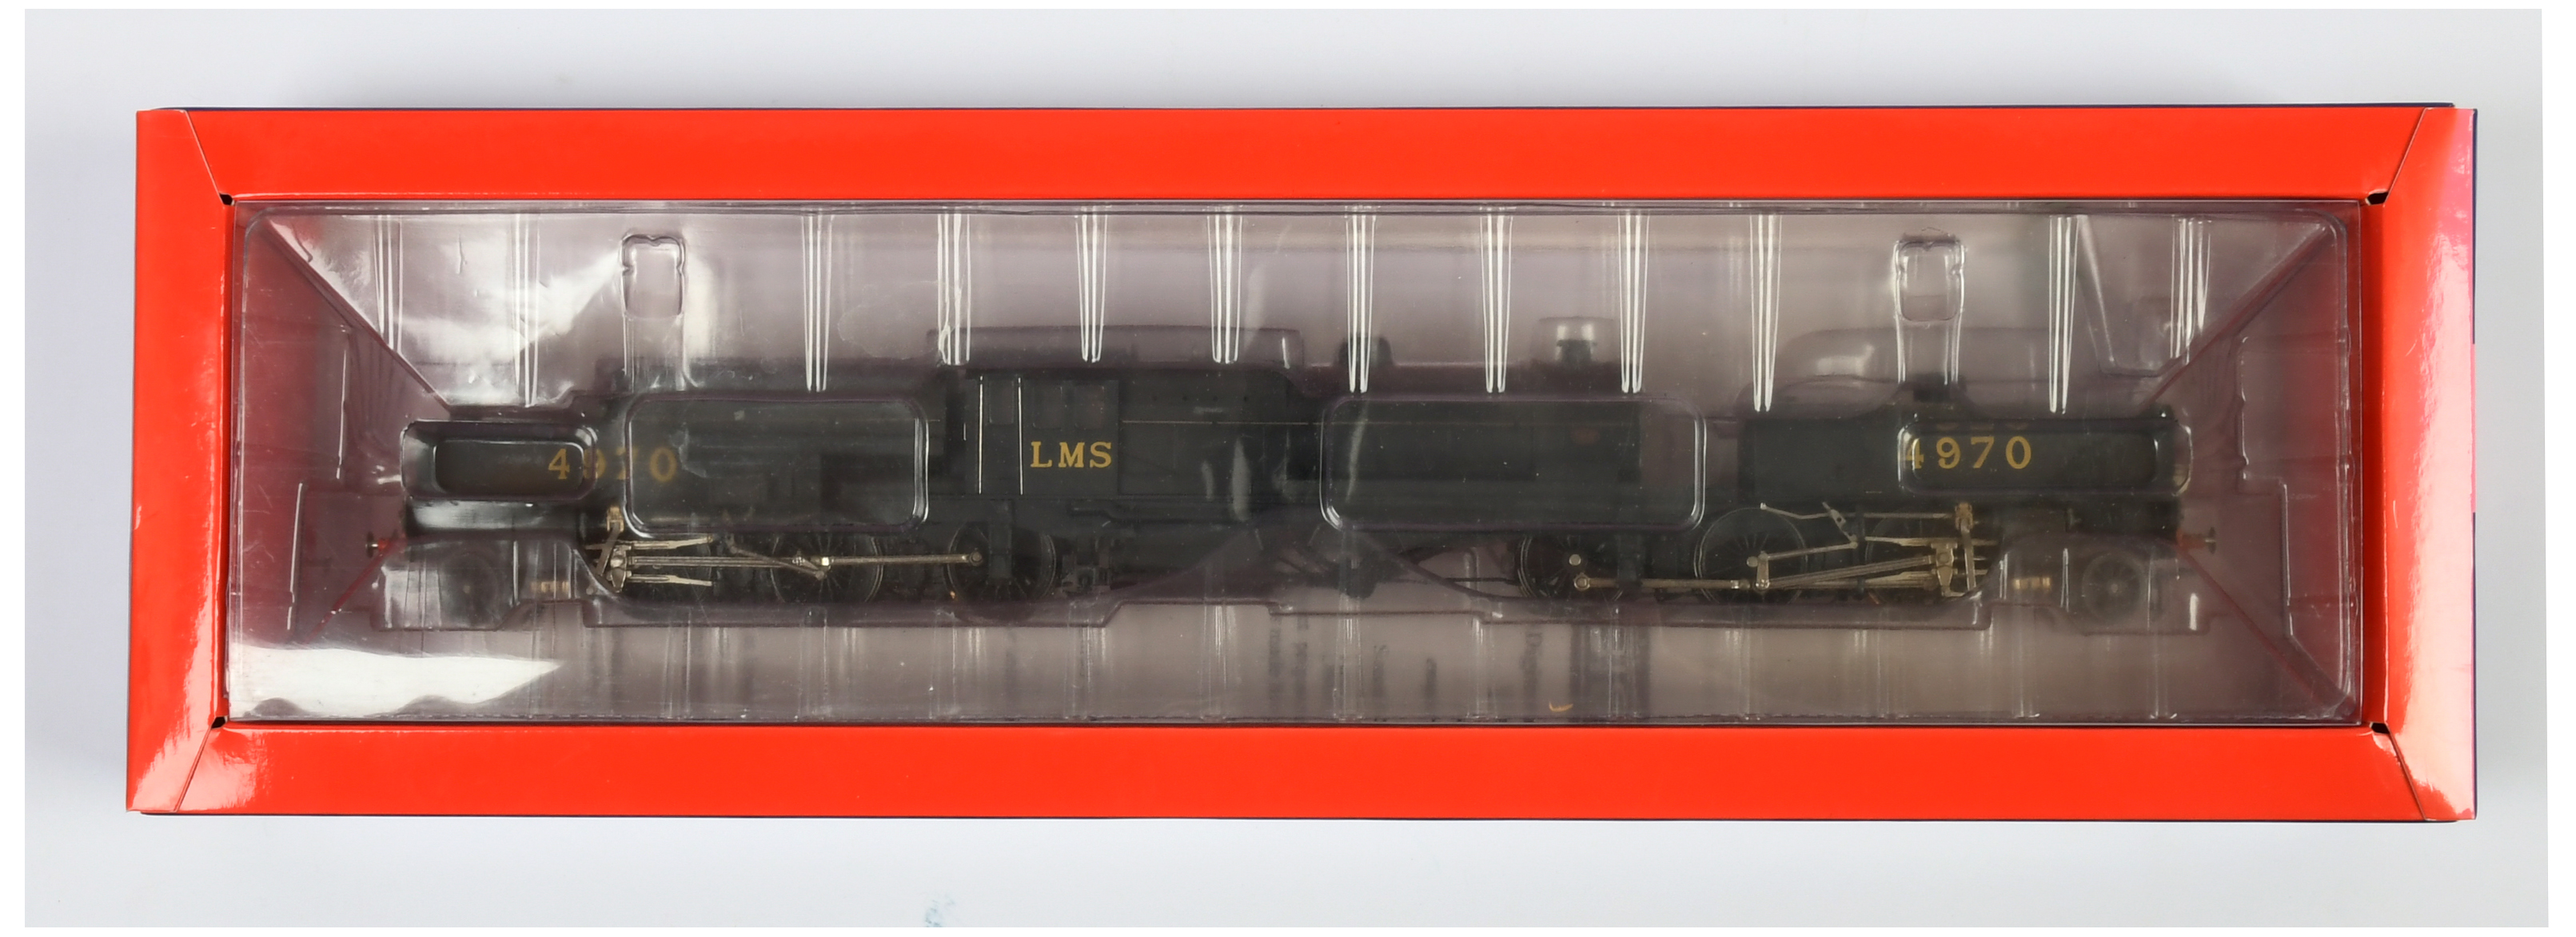 Heljan OO Gauge 266201 2-6-0 0-6-2 LMS black livery Beyer Garratt Loco No.4970 - Image 2 of 2